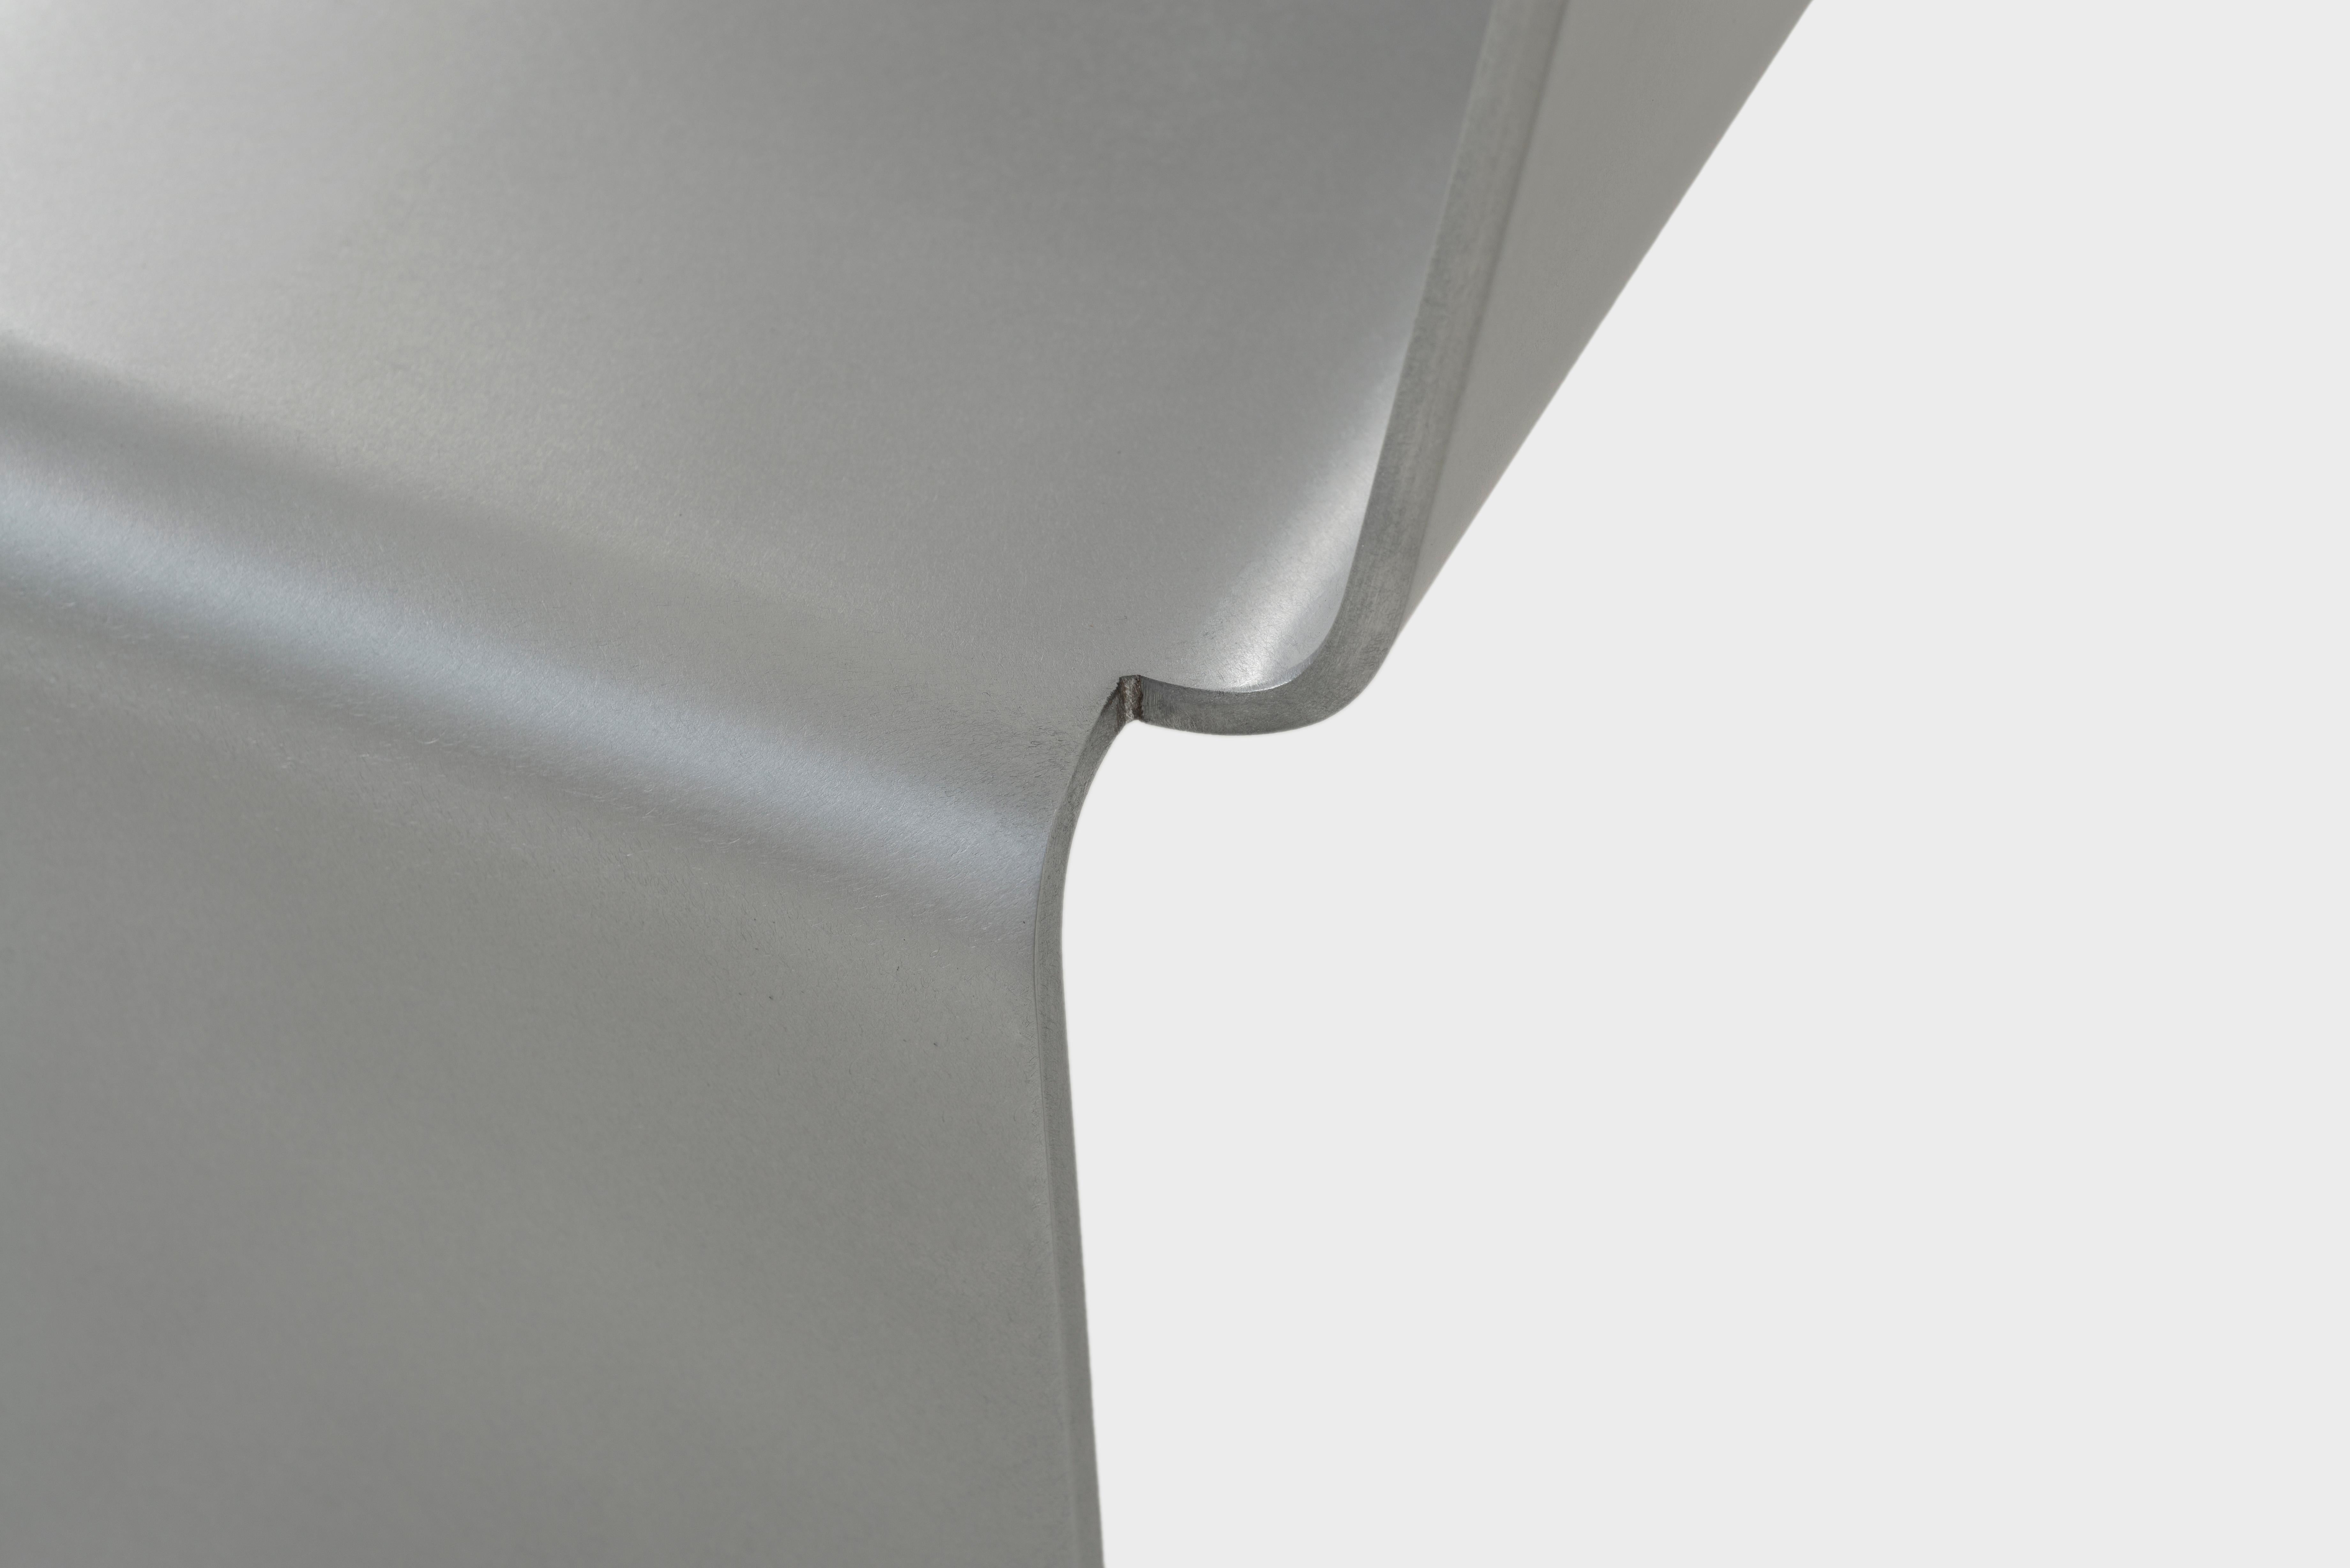 Le banc SS de Jonathan Nesci en plaque d'aluminium d'un quart de pouce coupée, formée et cirée. Une pièce de métal à trois coudes crée un dossier et des pieds. Chaque œuvre est finie à la main et cirée. La forme est disponible en largeur de chaise